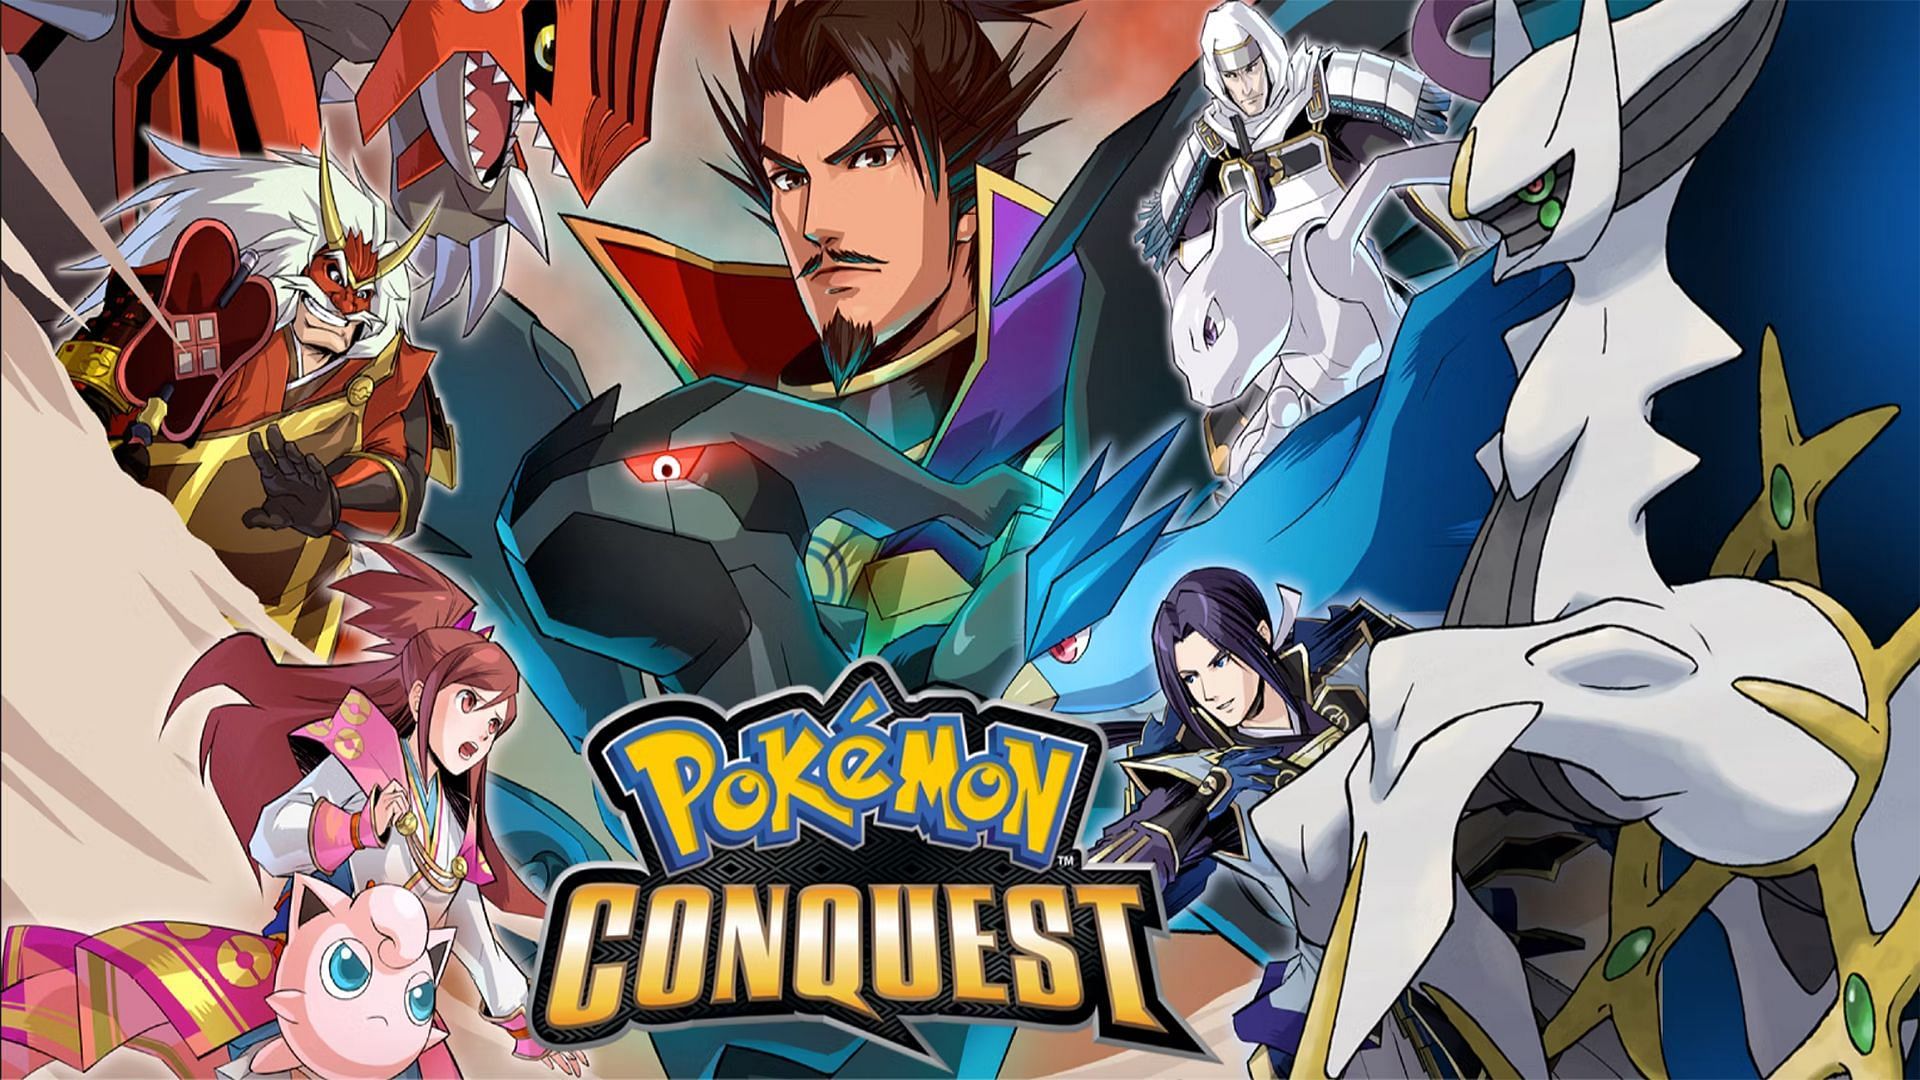 Pokemon Conquest cover picture (Image via Nintendo)